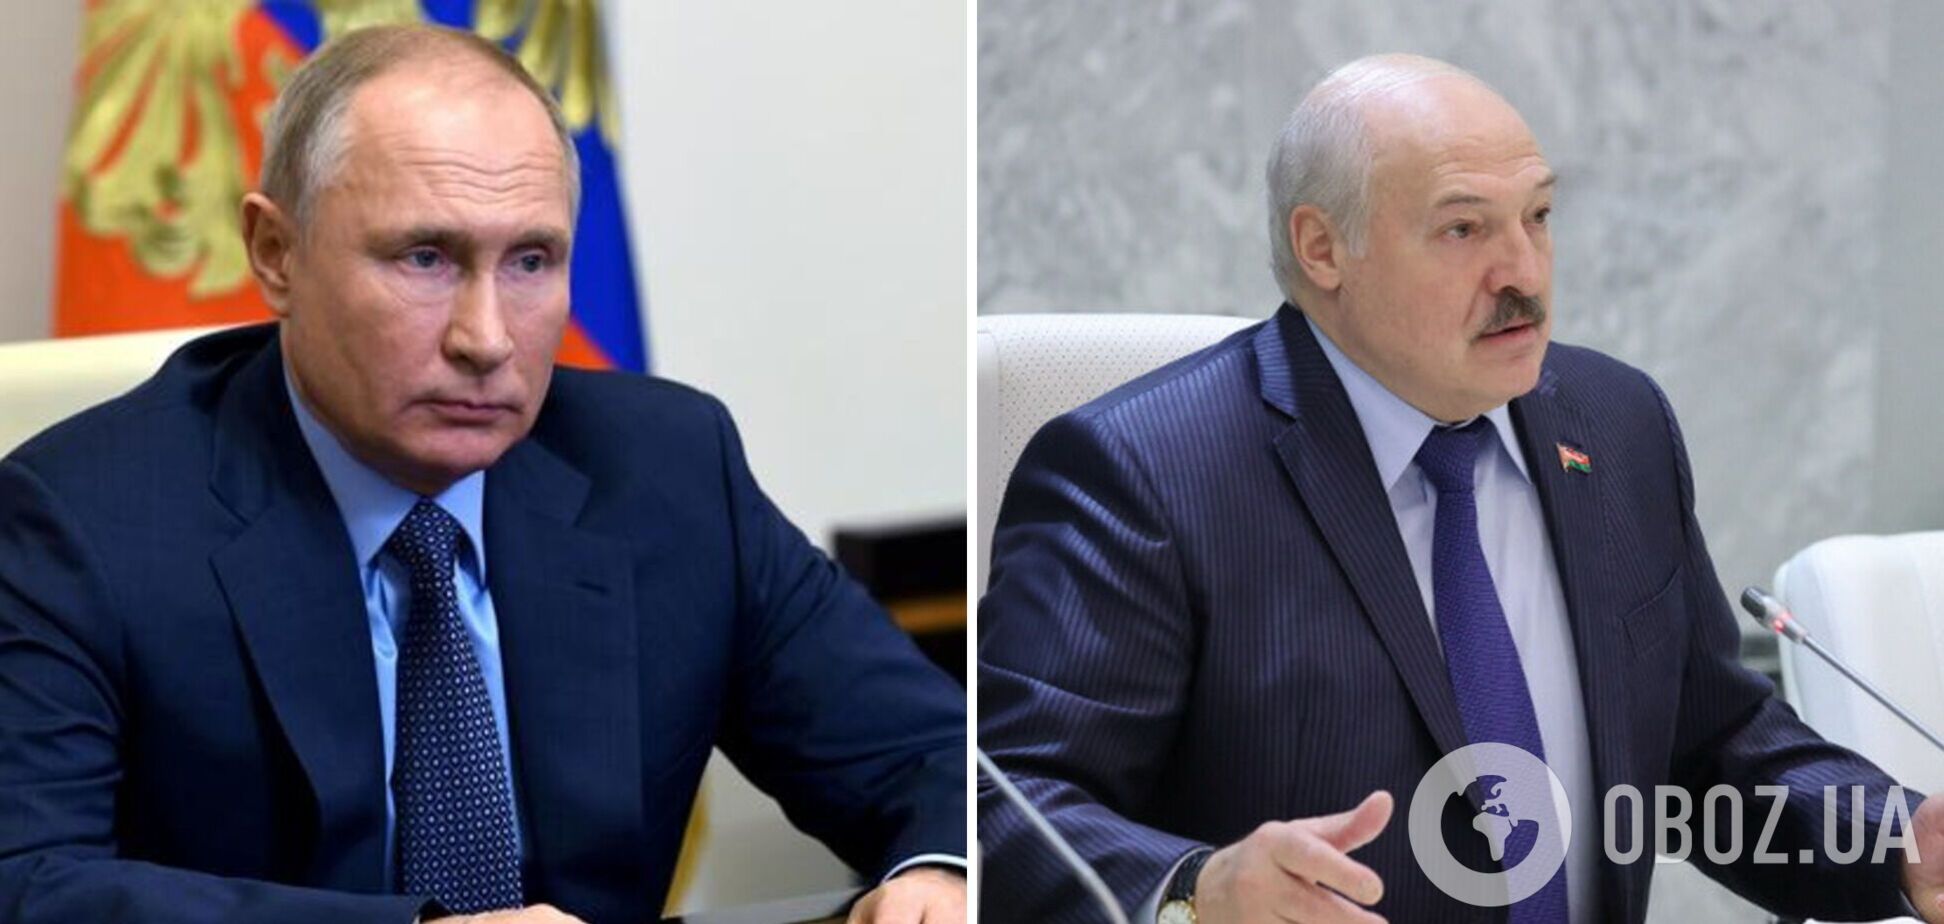 'Мы с Путиным покажем кузькину мать': Лукашенко заявил об интеграции от Бреста до Владивостока